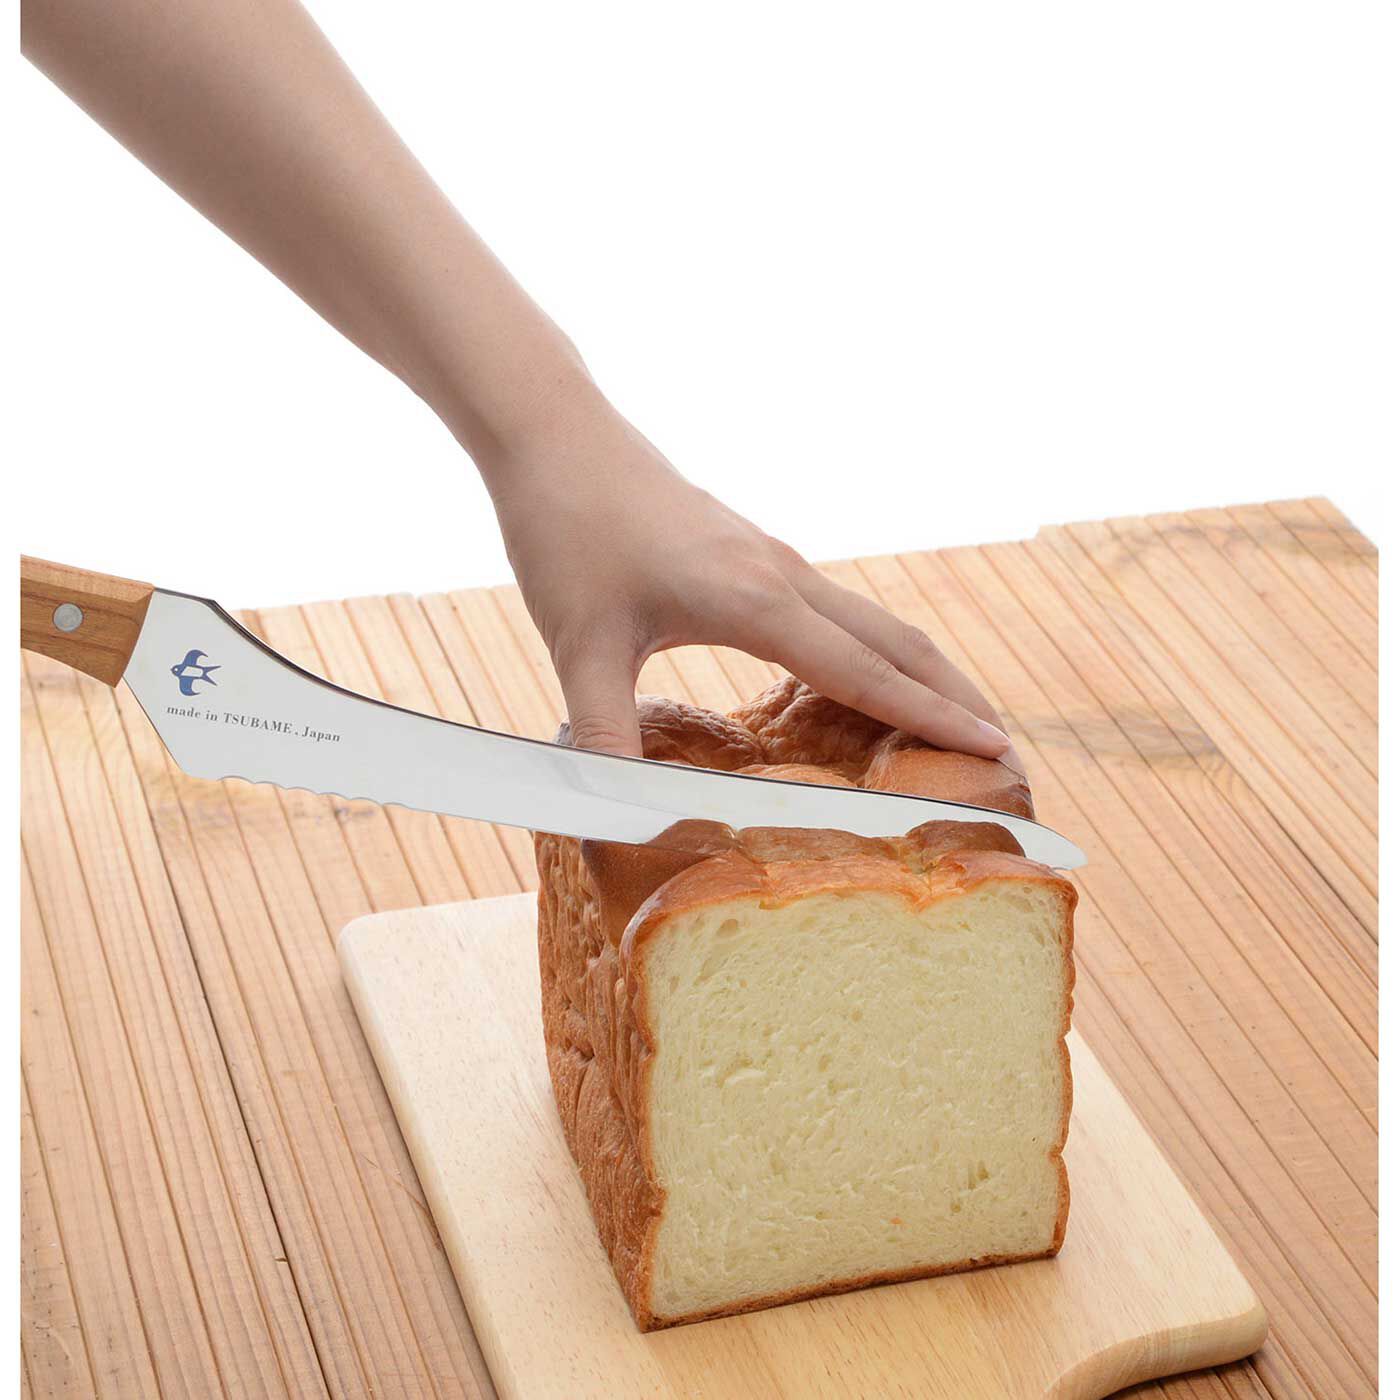 フェリシモの雑貨 Kraso|波刃と直刃がポイント！ 硬くてもやわらかくてもきれいに切れるパンナイフ|やわらかいパンをつぶしてしまいがちな最初に、波刃がパンの端にスッと入り、真ん中の直刃がパンくずをおさえながらパンを切ることができます